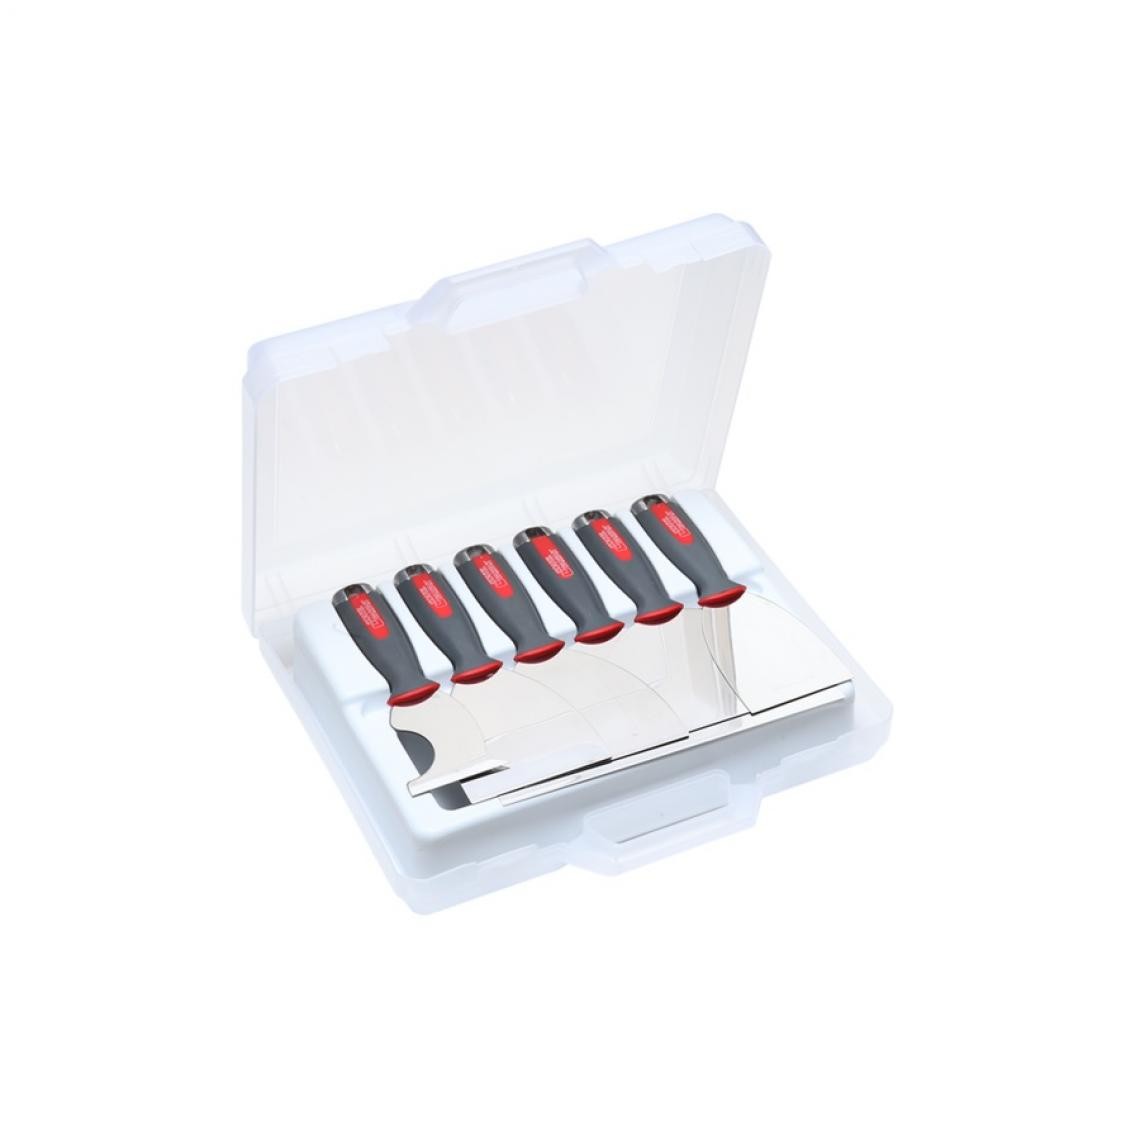 L'Outil Parfait - L'Outil Parfait - Valise 6 couteaux plaquiste Alu-Choc - 80117 - Lève-plaques